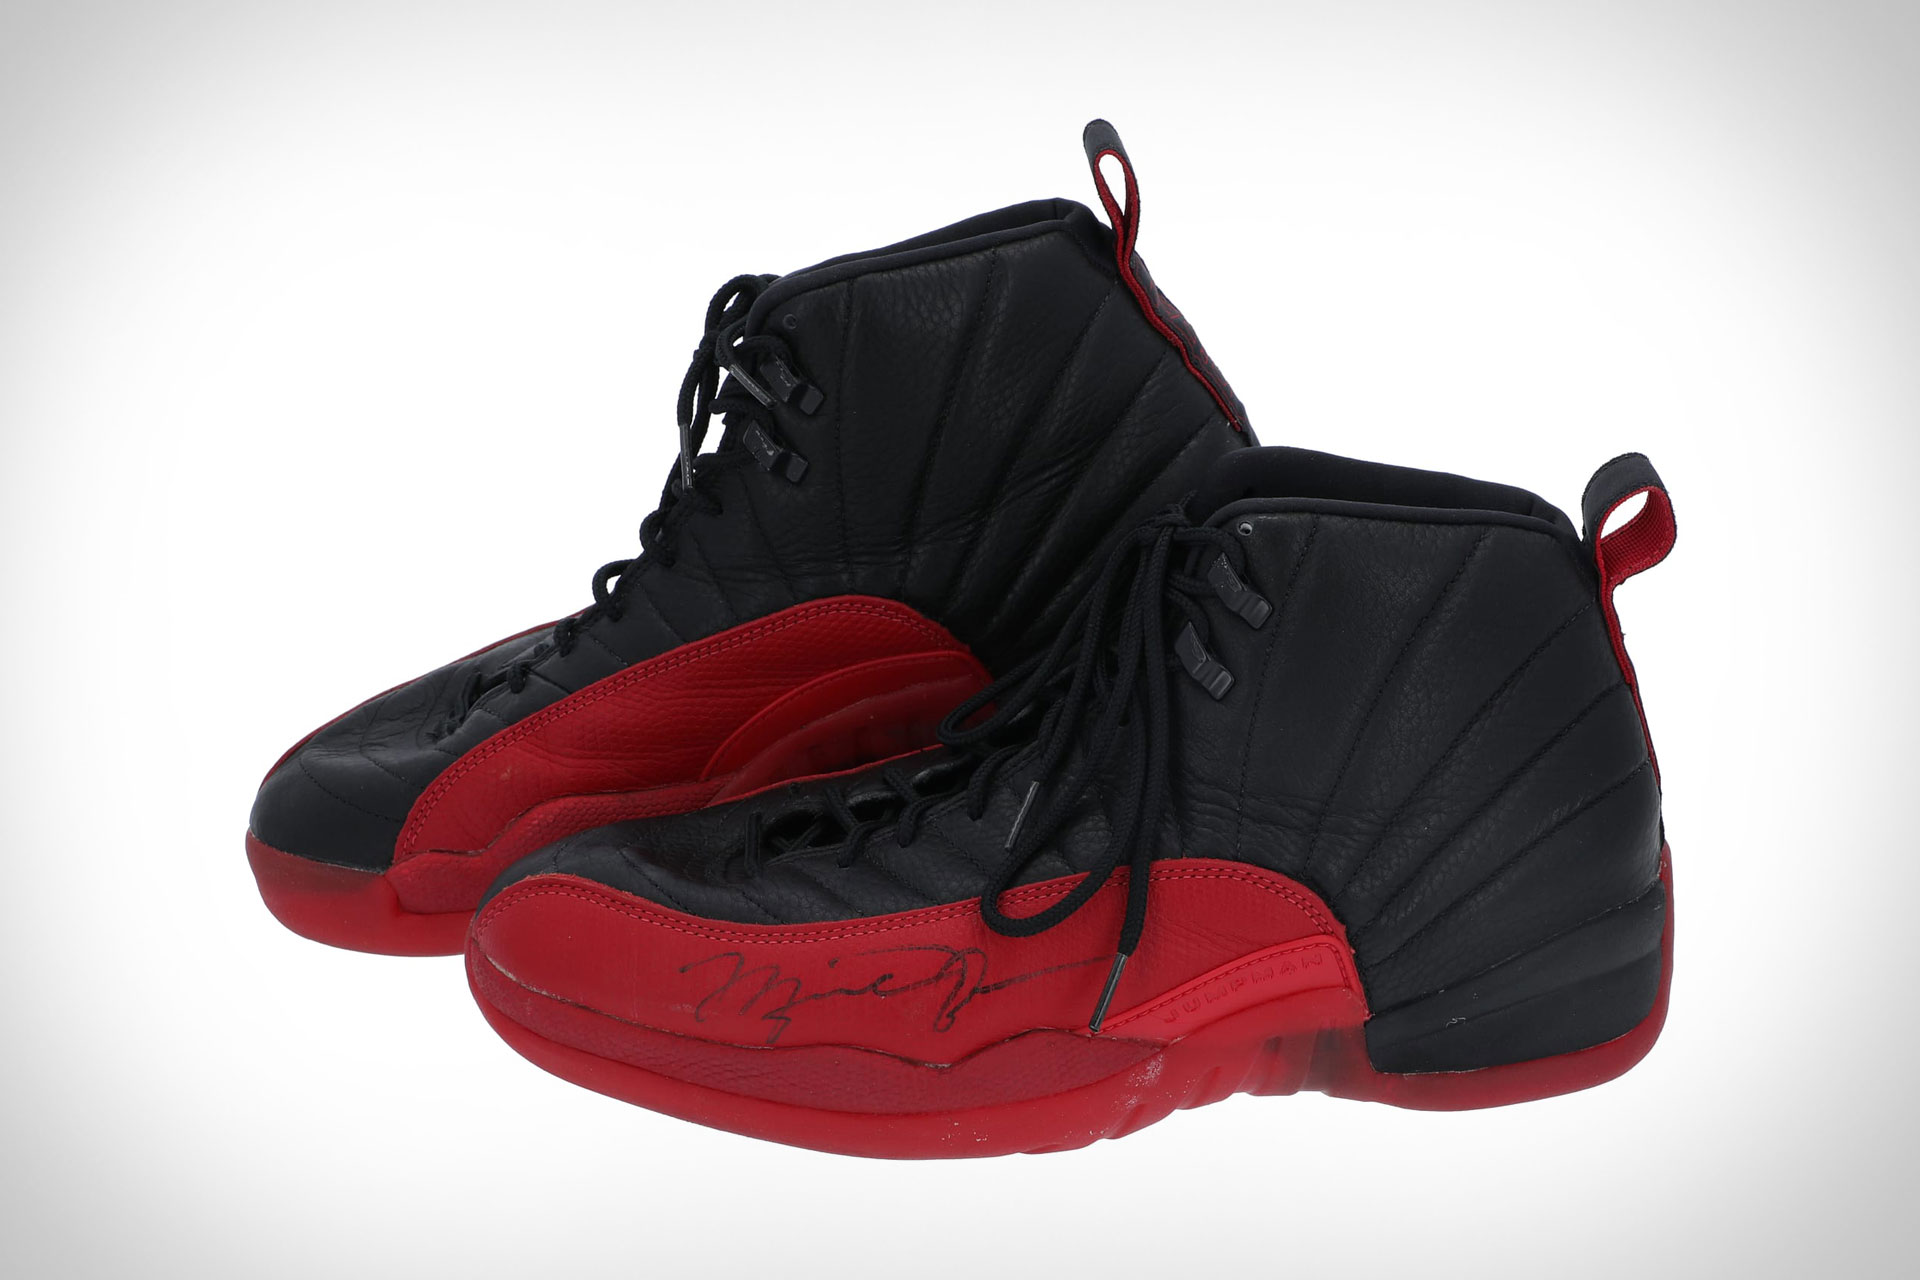 Michael Jordan’s ‘Flu Game’ Signed Air Jordan 12 Sneakers, #Michael #Jordans #Flu #Game #Signed #Air #Jordan #Sneakers